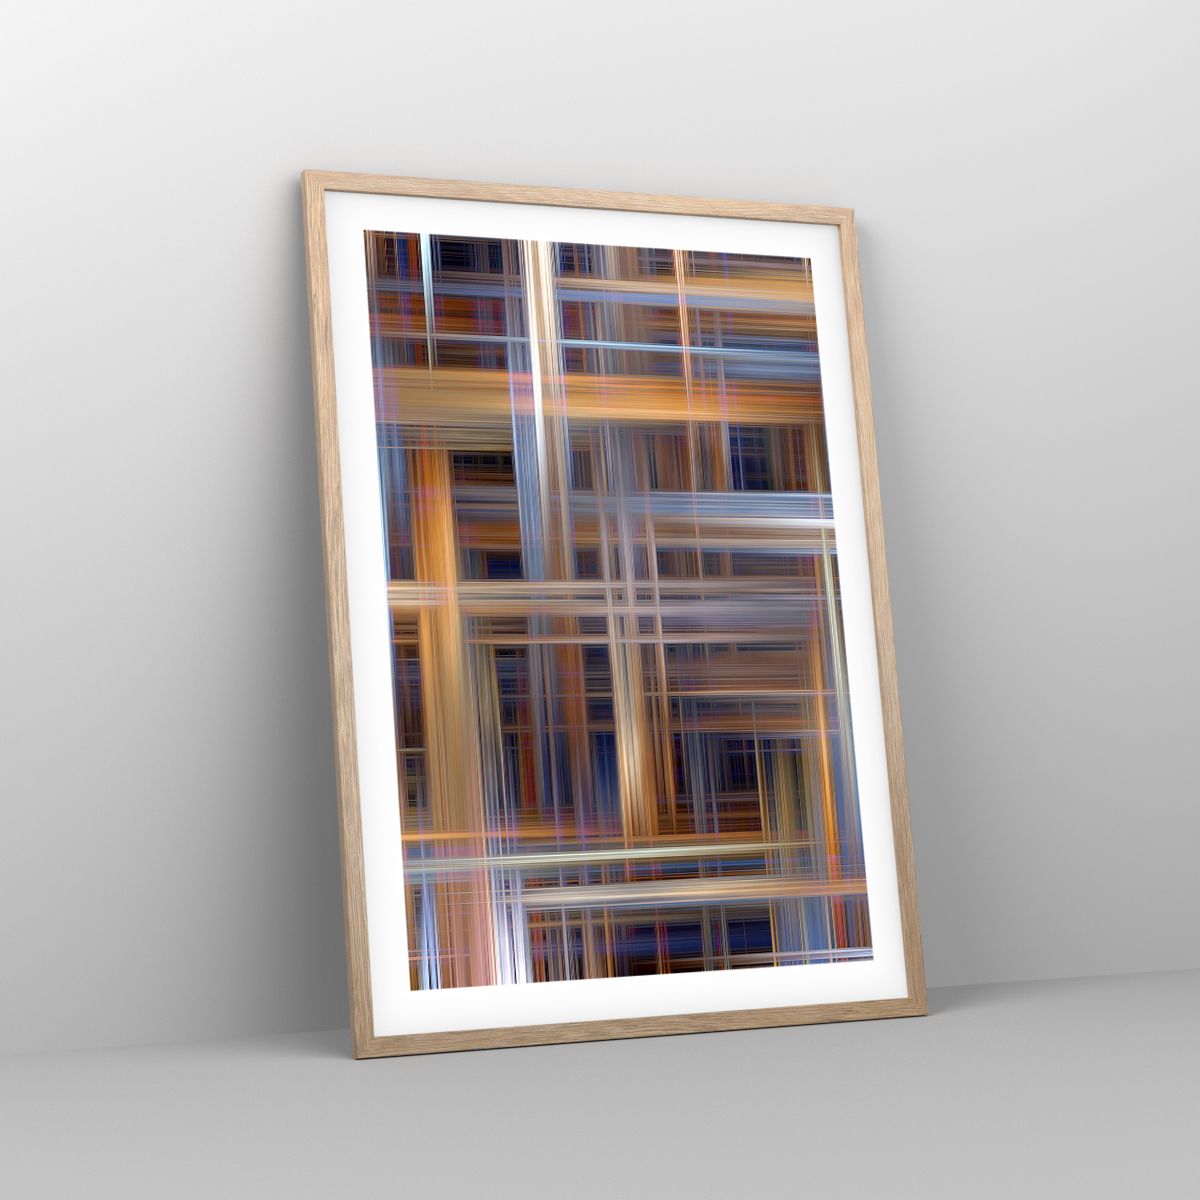 Póster en marco roble claro 50x70 cm - Composición alada - Arttor